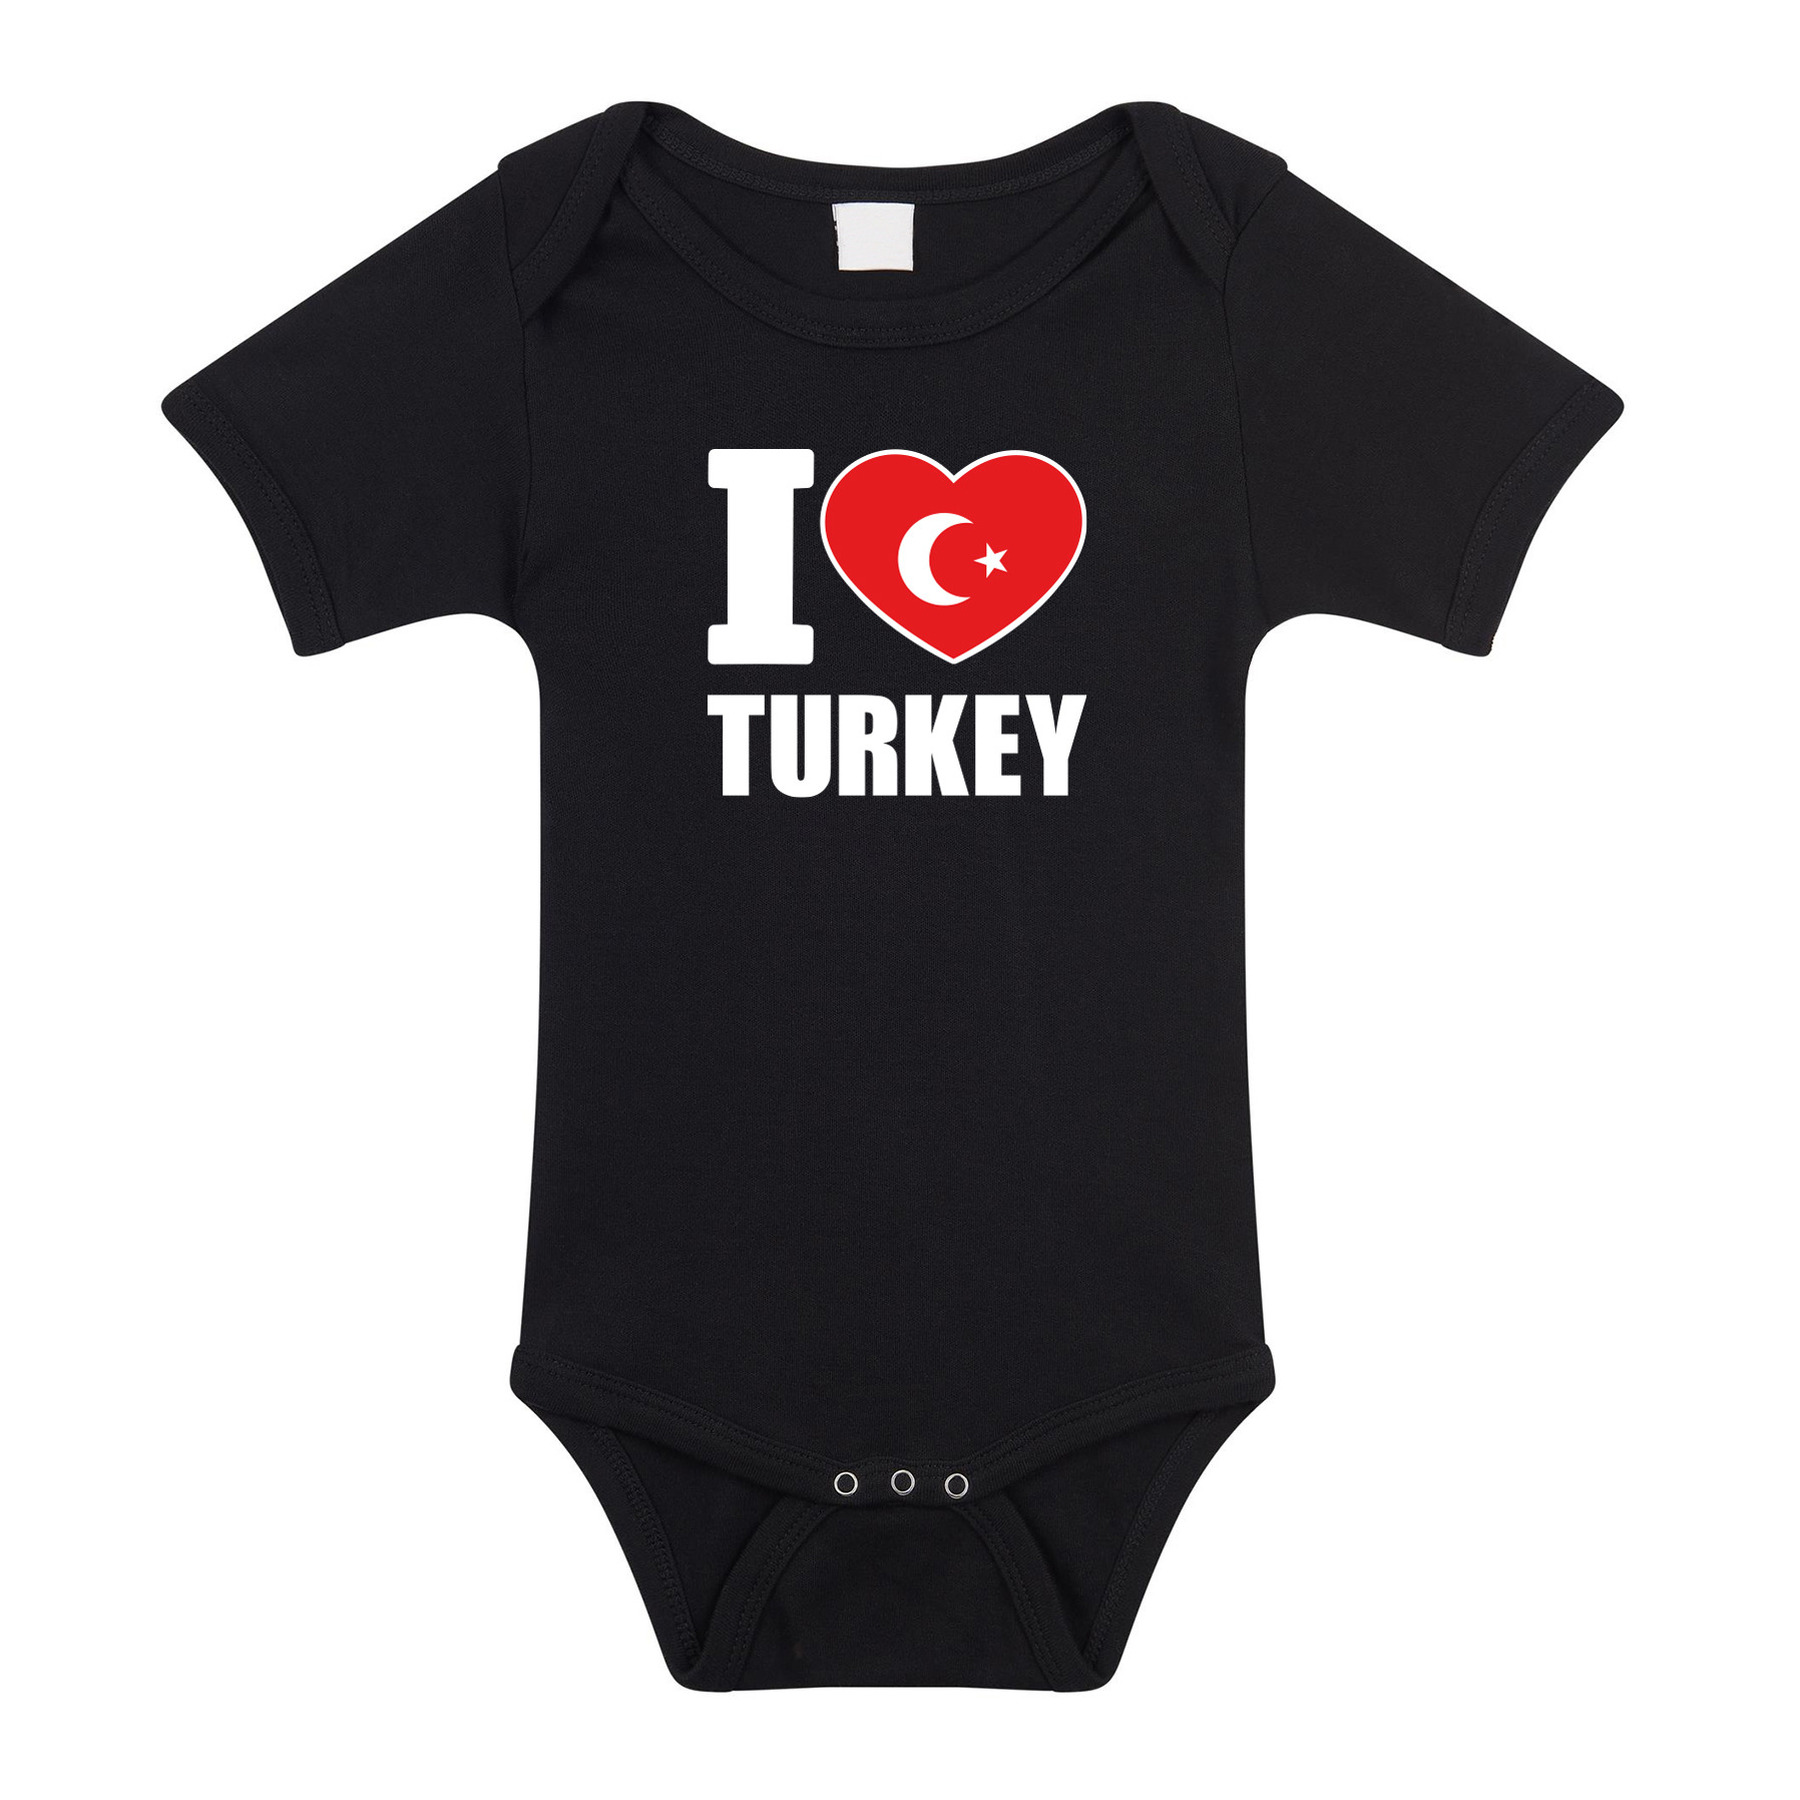 I love Turkey baby rompertje zwart Turkije jongen-meisje